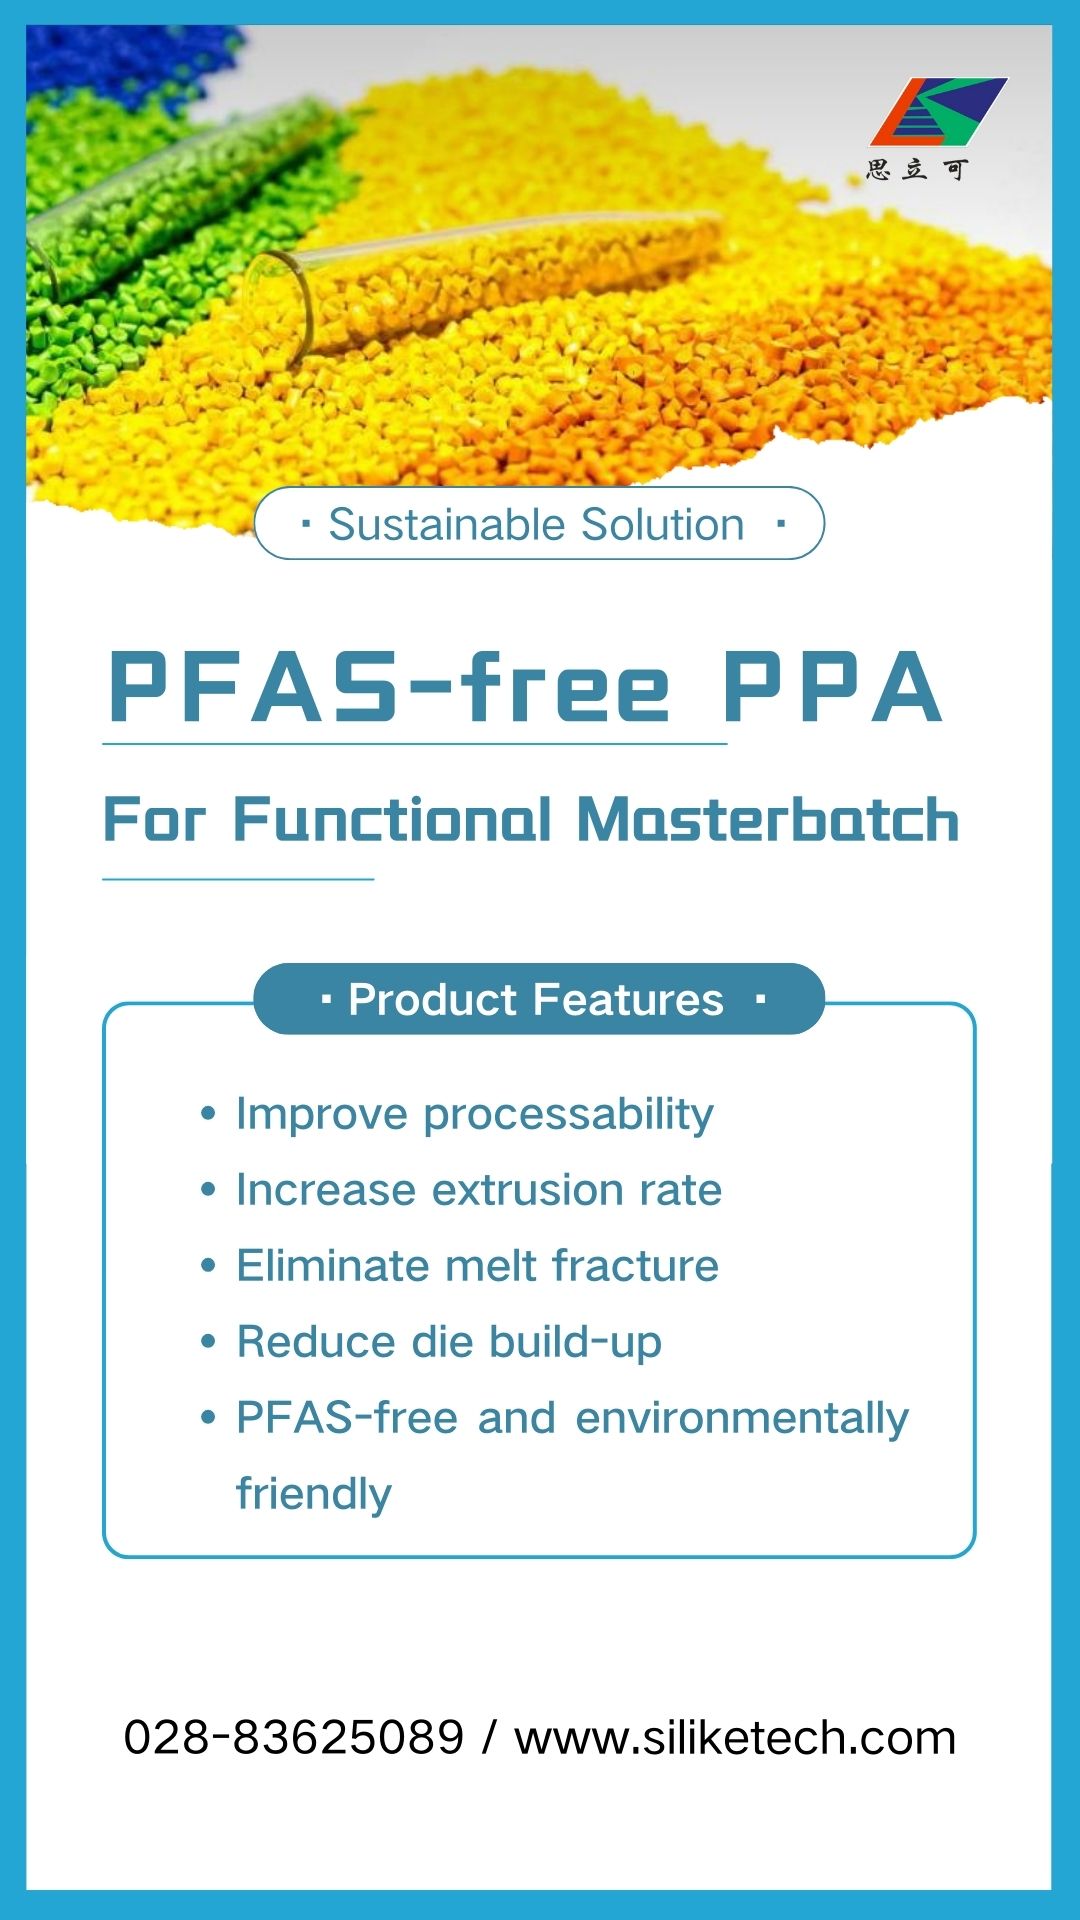 PFAS-dan erkin PPA, masterbatch işlemegiň kynçylyklaryny çözýär: ereýän döwükleri ýok etmek, ölmegi azaltmak.